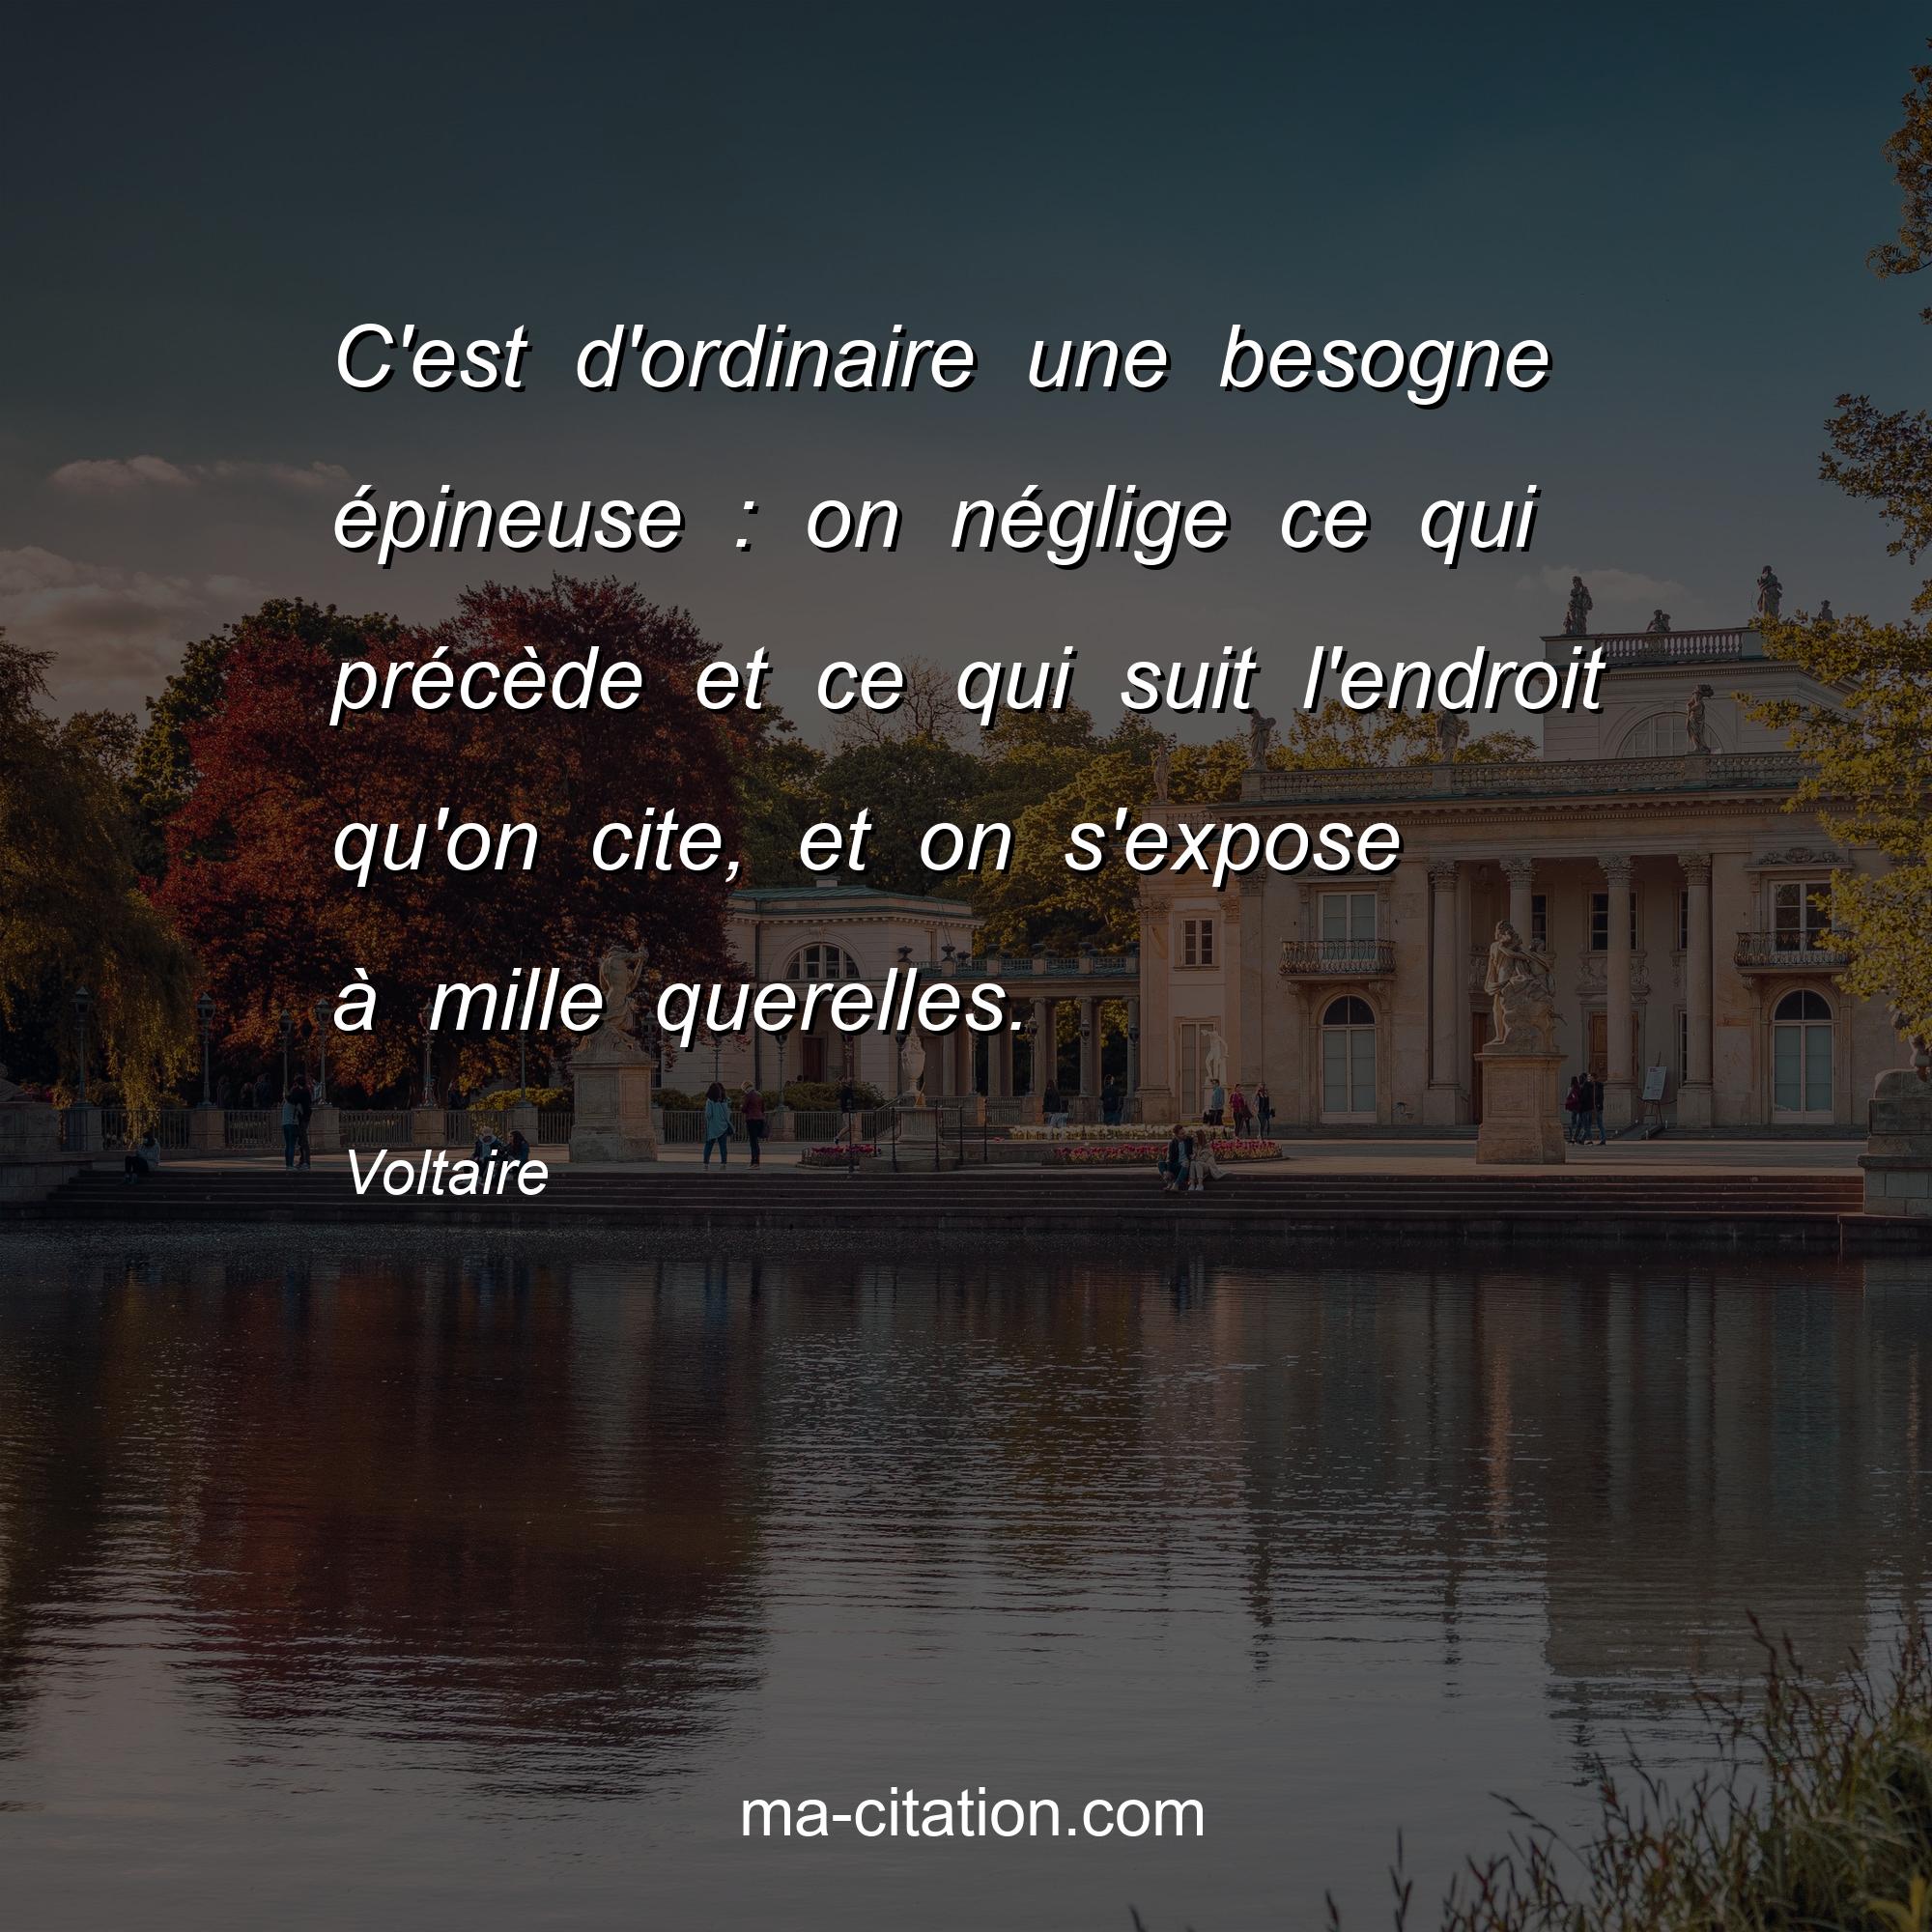 Voltaire : C'est d'ordinaire une besogne épineuse : on néglige ce qui précède et ce qui suit l'endroit qu'on cite, et on s'expose à mille querelles.